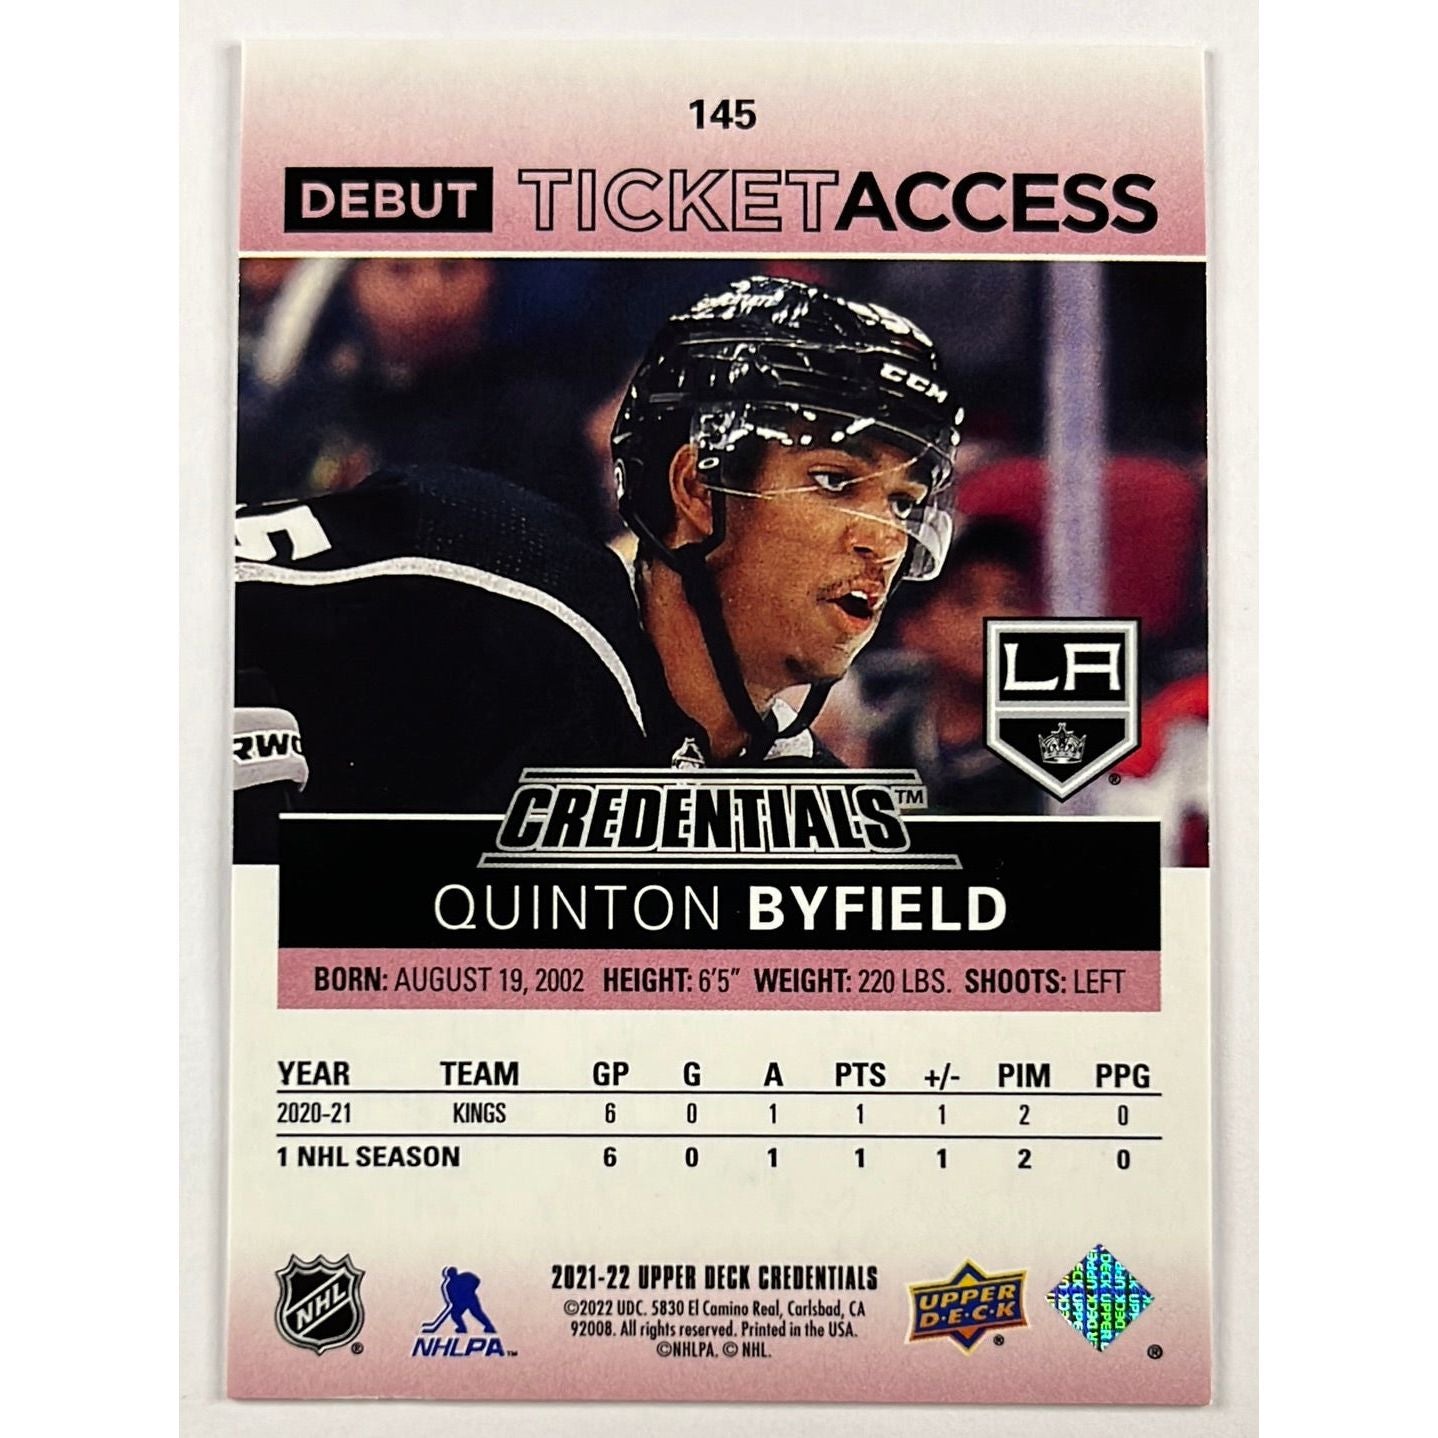 2021-22 Upper Deck Credentials Quinton Byfield Debut Ticket Access /199